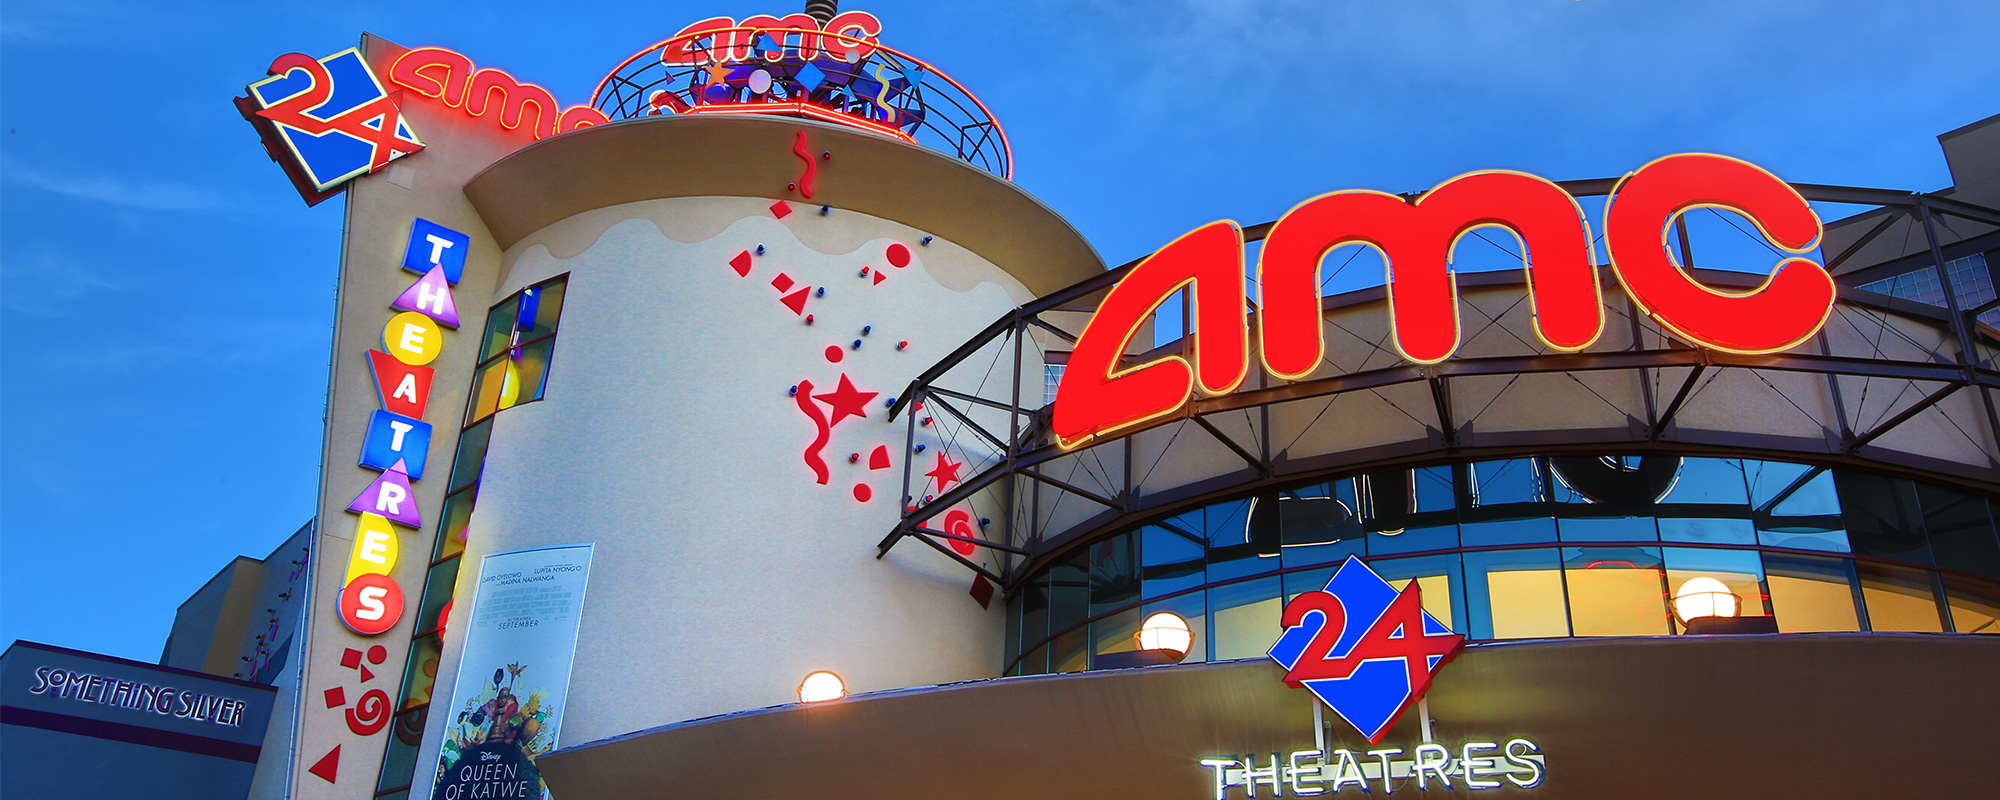 Amc Dine-in Disney Springs 24 - Lake Buena Vista Florida 32830 - Amc Theatres